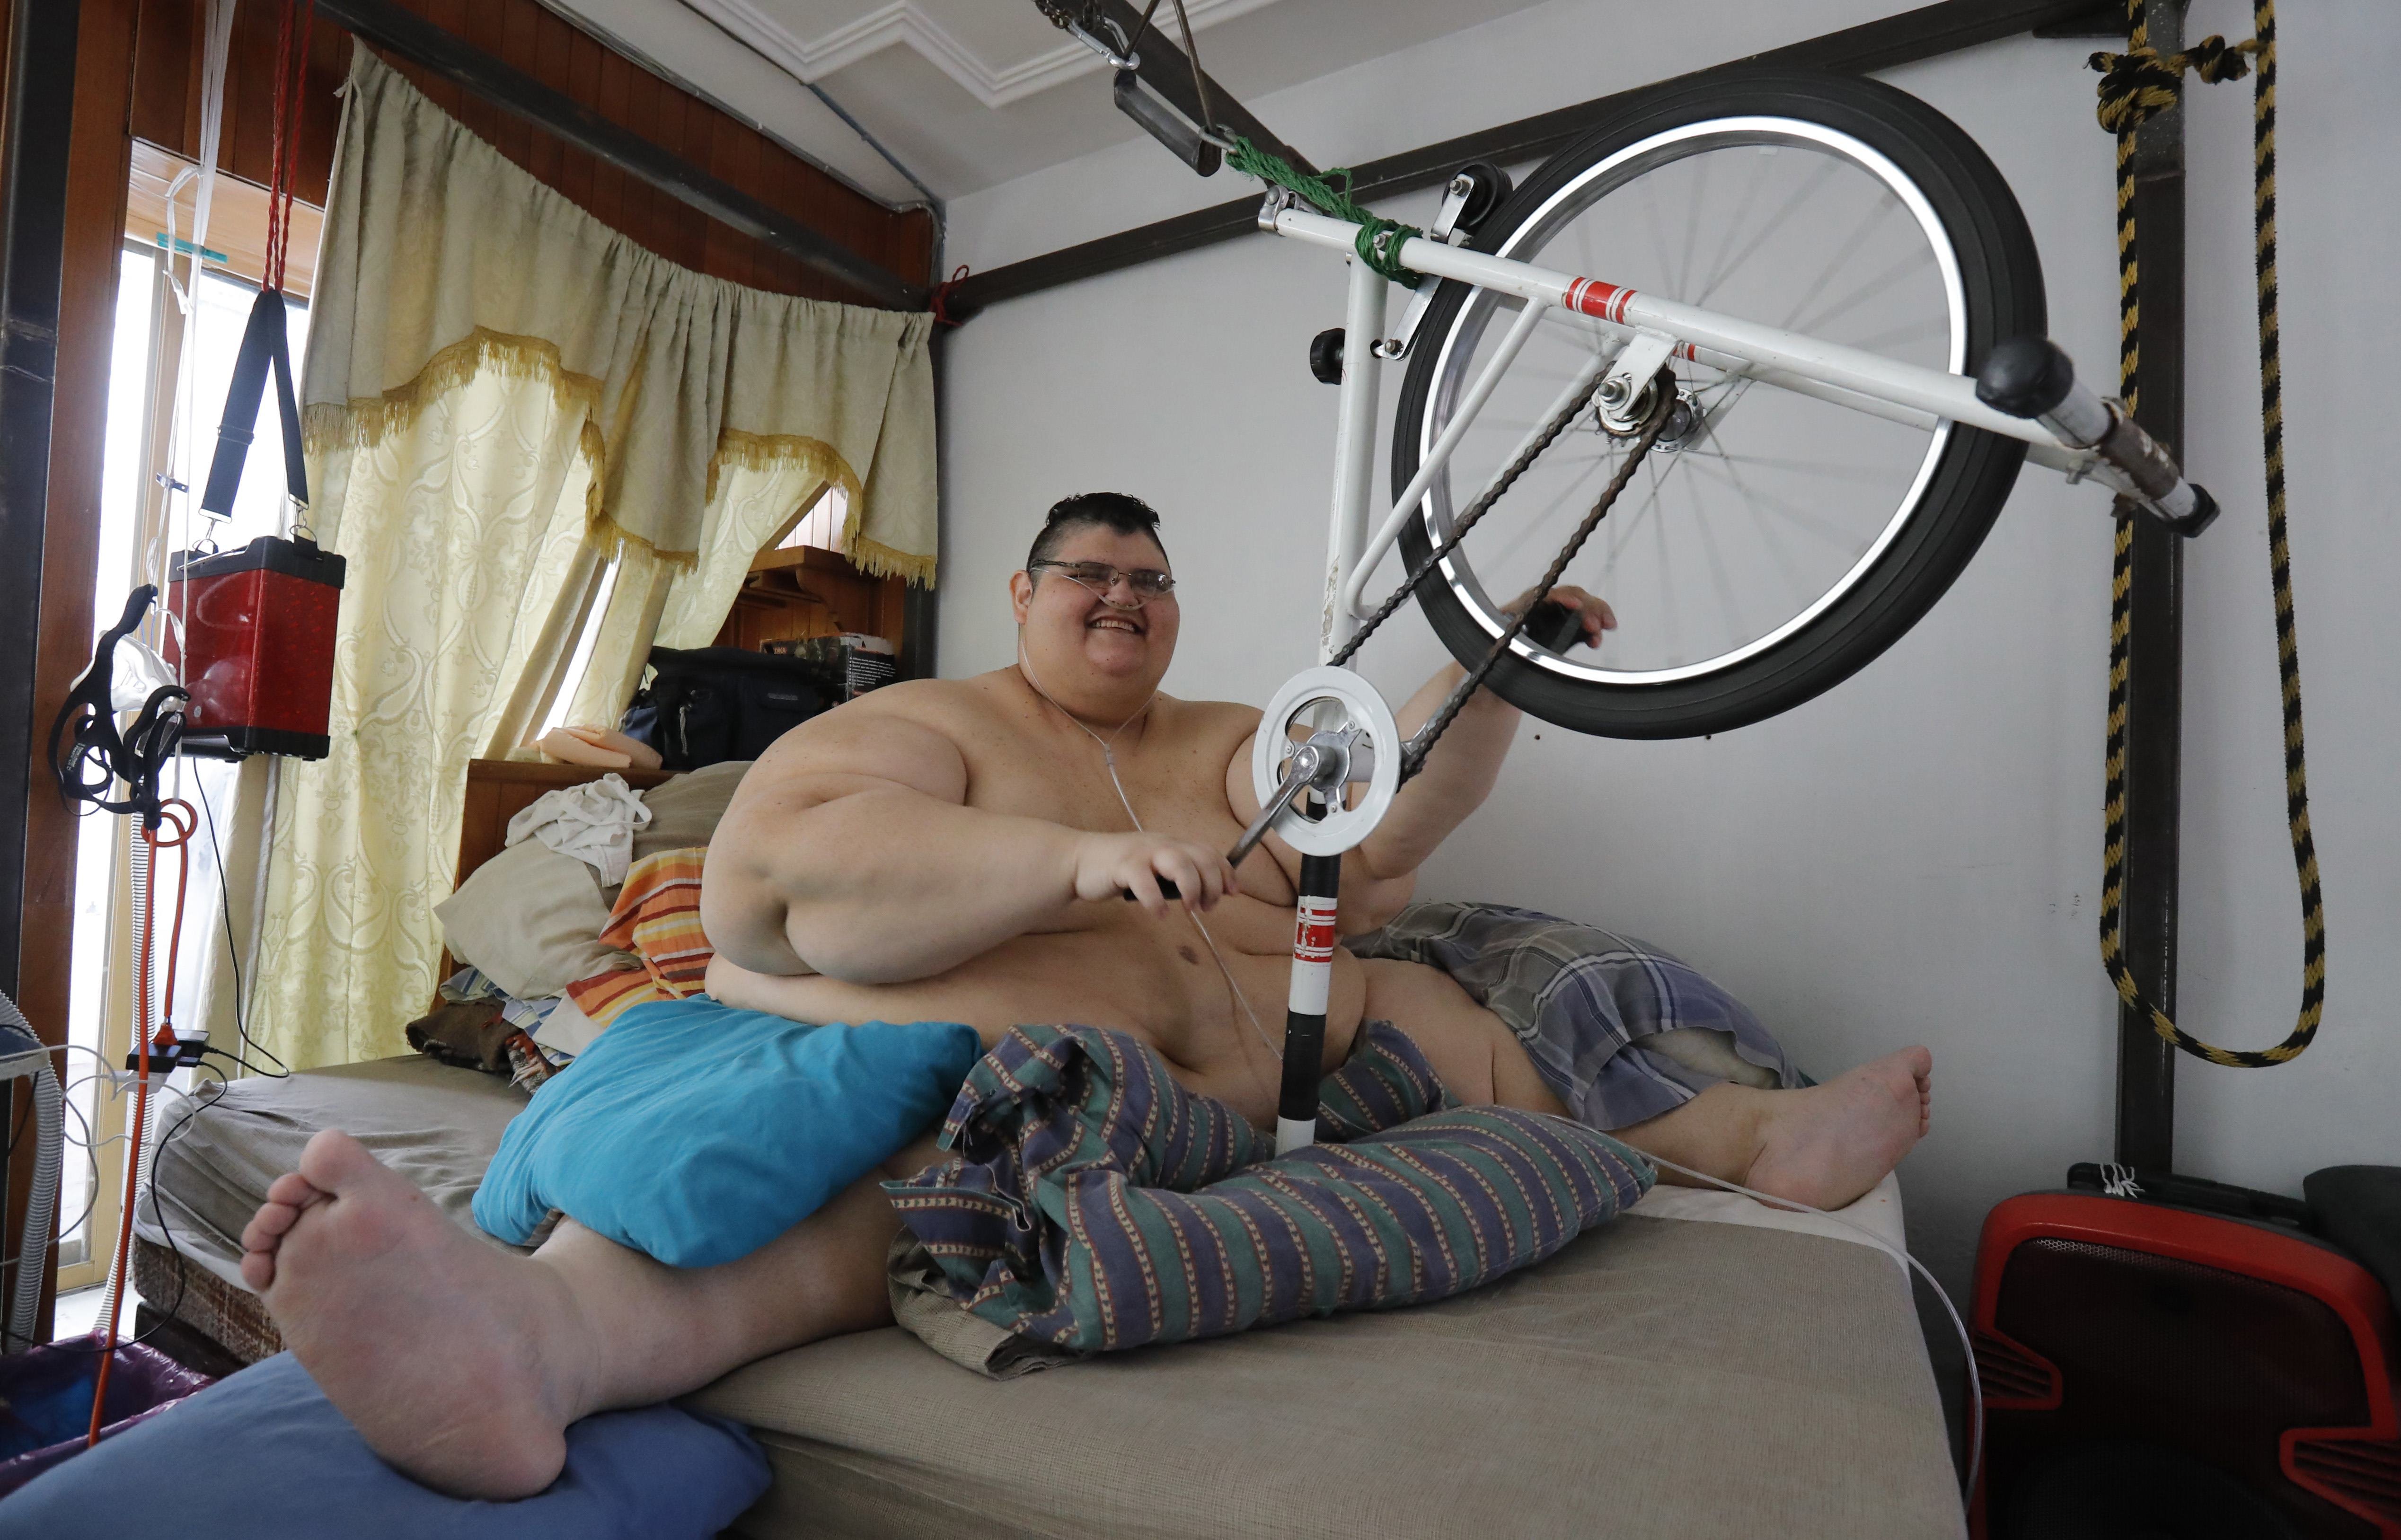 Д толстый х. Хуан Педро самый толстый. Хуан Педро Франко 600 кг. Хуан Педро самый тяжелый человек в мире.